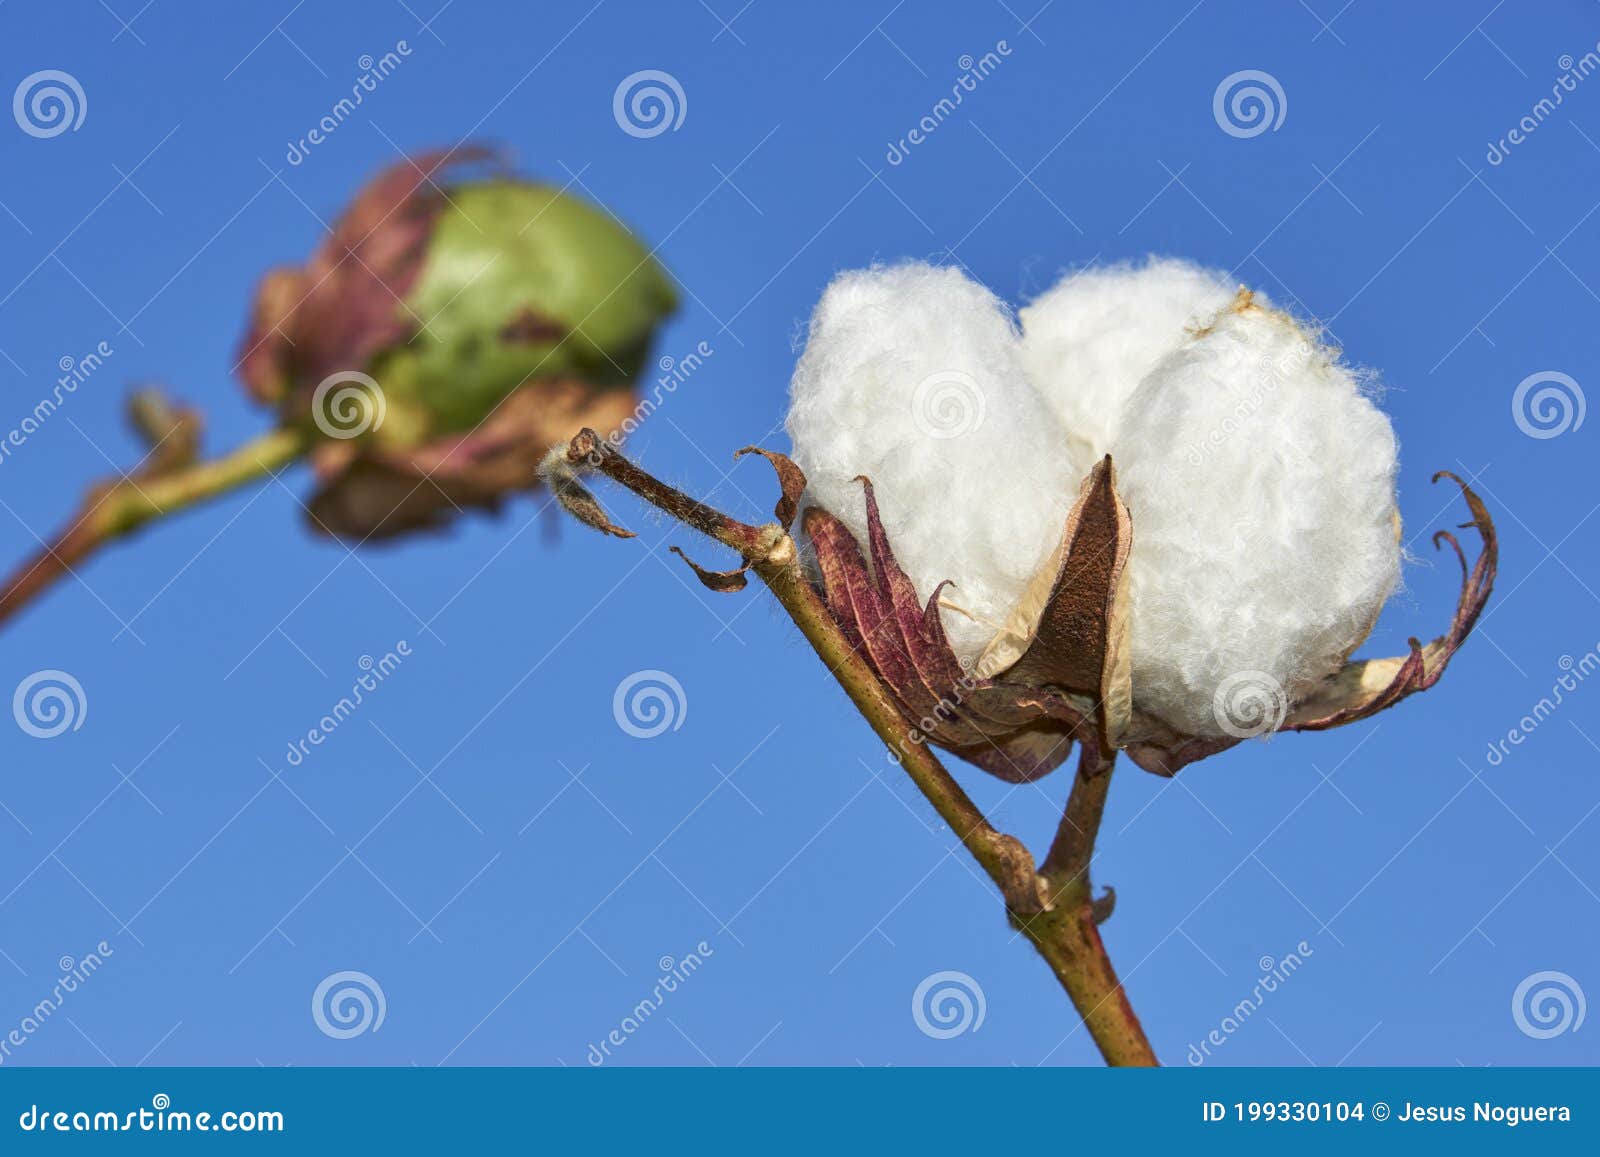 cotton plantation in puebla de cazalla, province of seville. spain